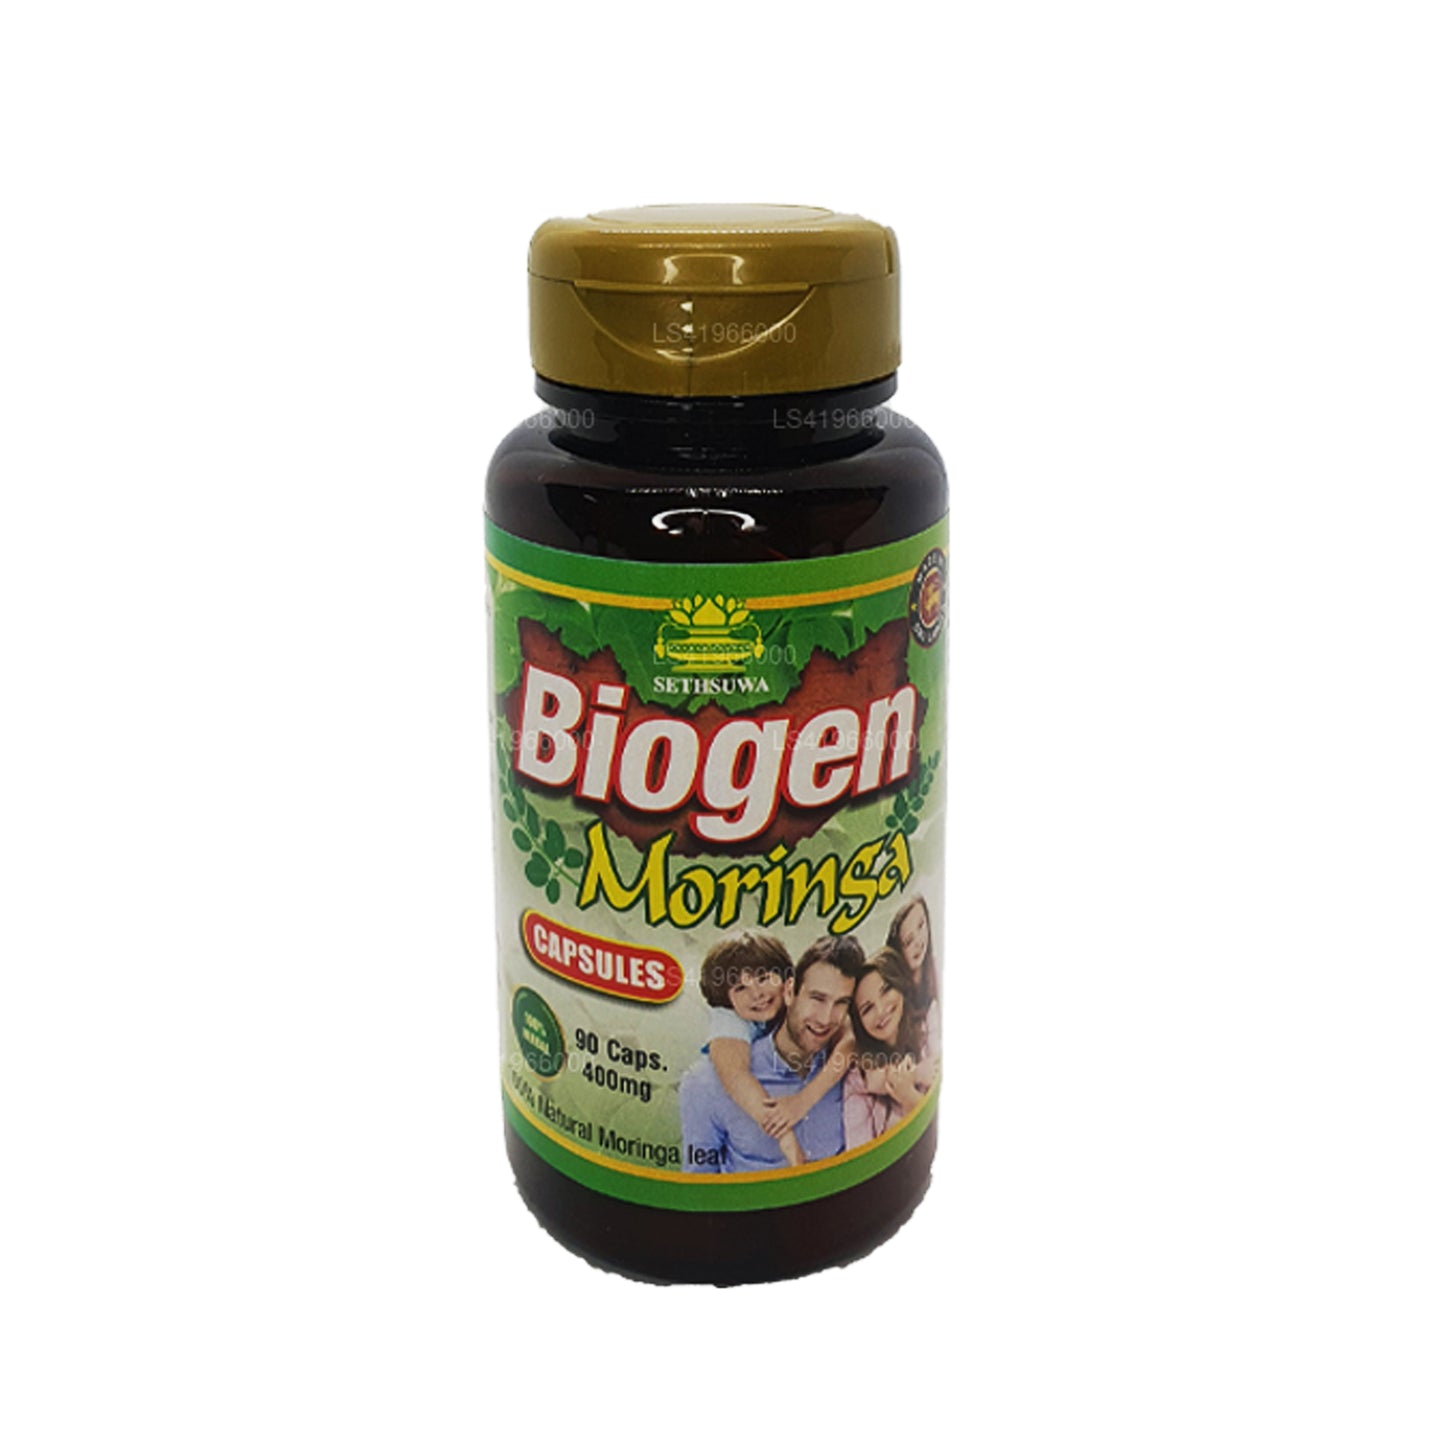 Moringa biogeeni (400mg x 90 Caps)